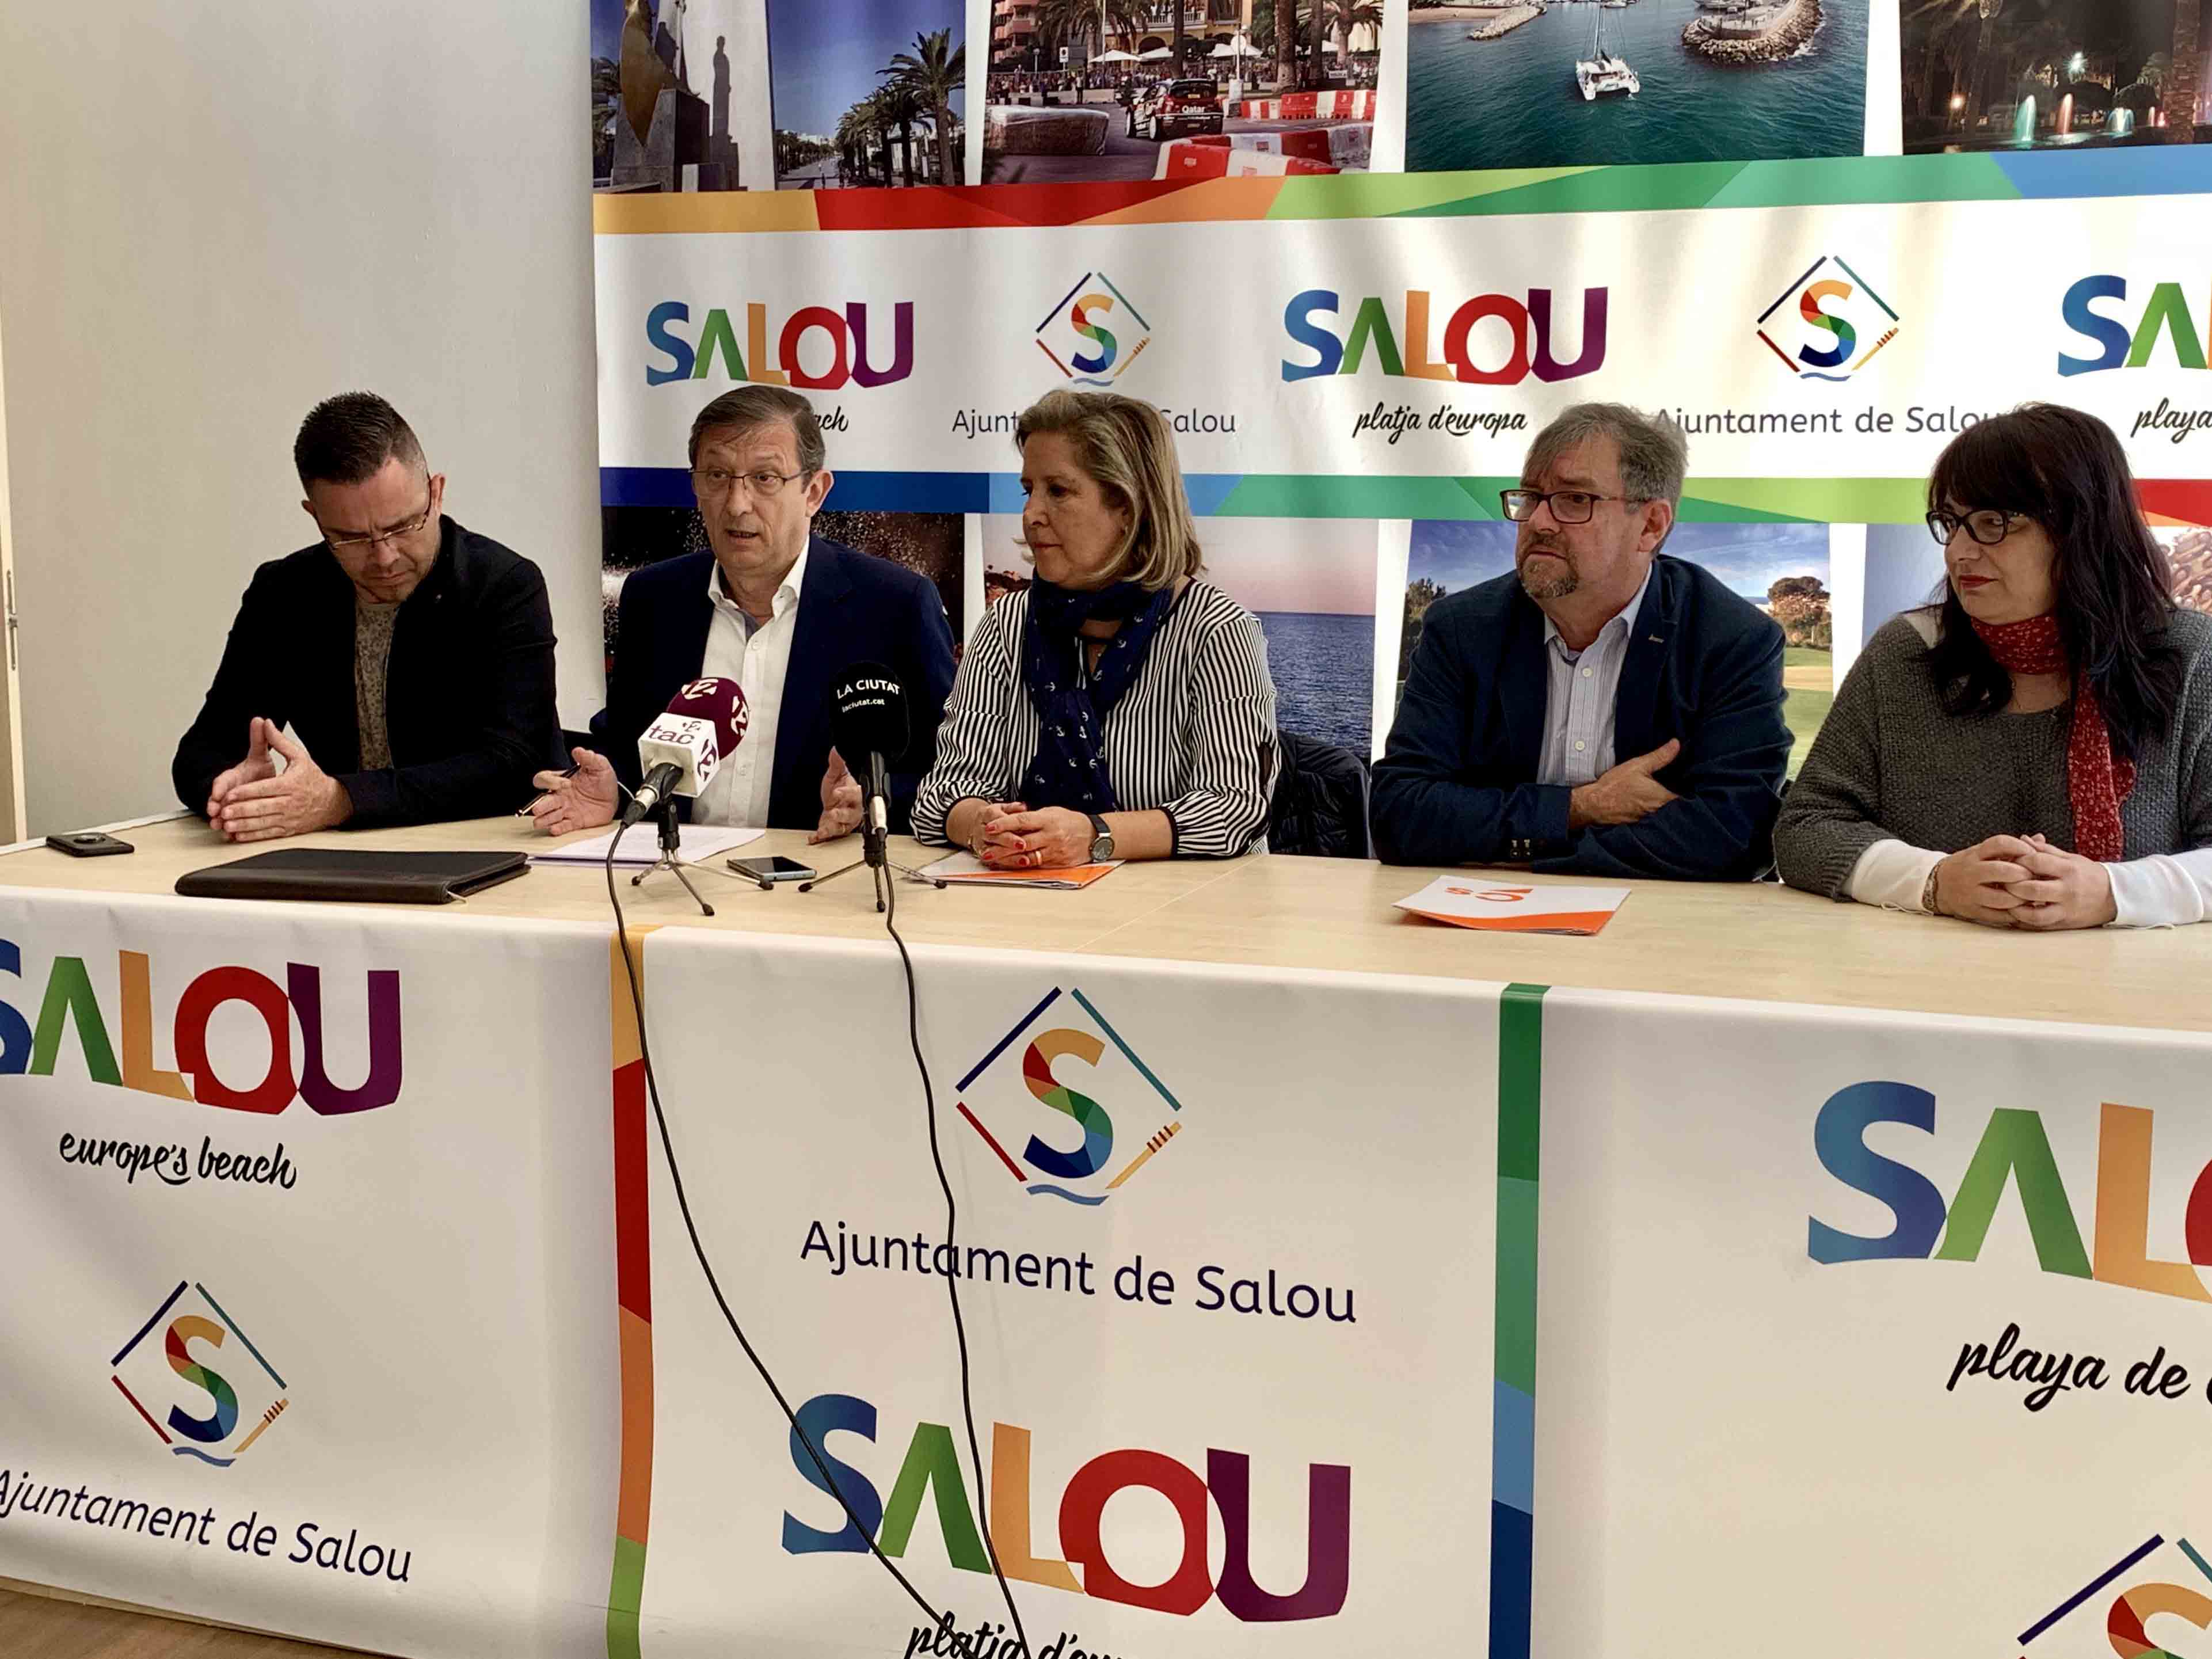 El Grup Municipal, juntament amb l'advocat Pere Lluís Huguet, consideren que "la pràctica de l'actual alcalde trenca amb la neutralitat i és una falta de respecte"